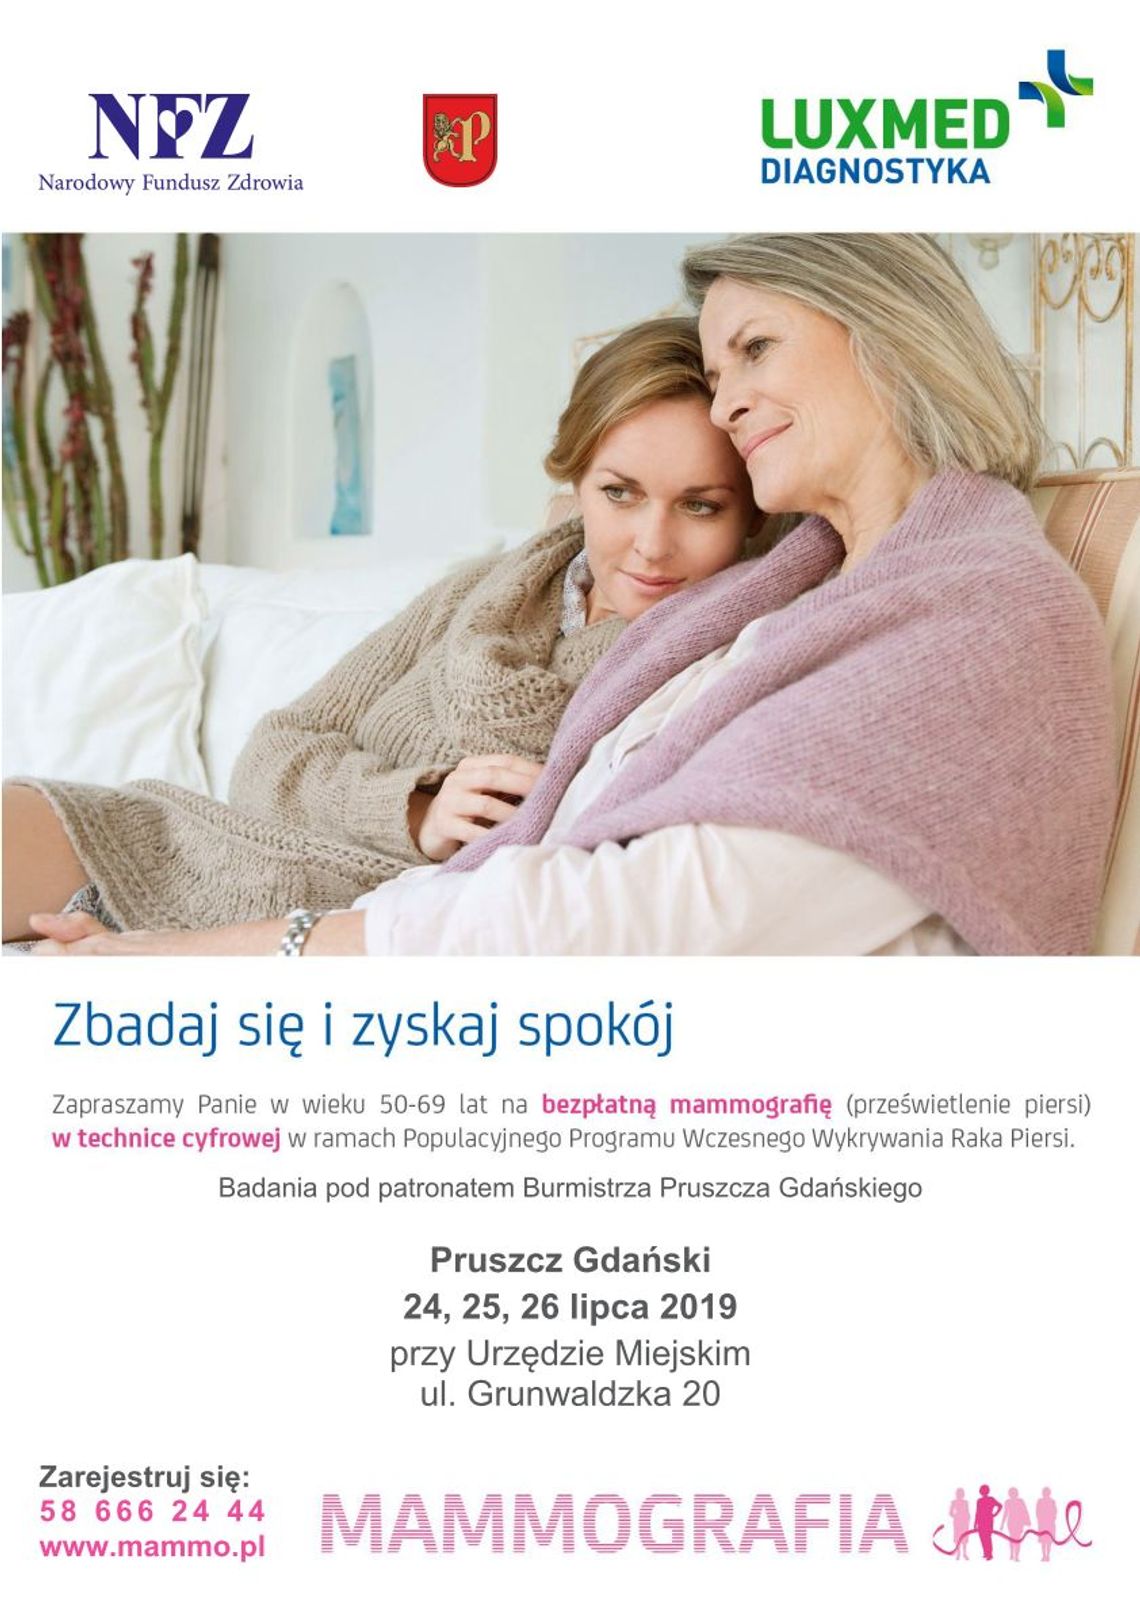 Bezpłatne badania mammograficzne w Pruszczu Gdańskim